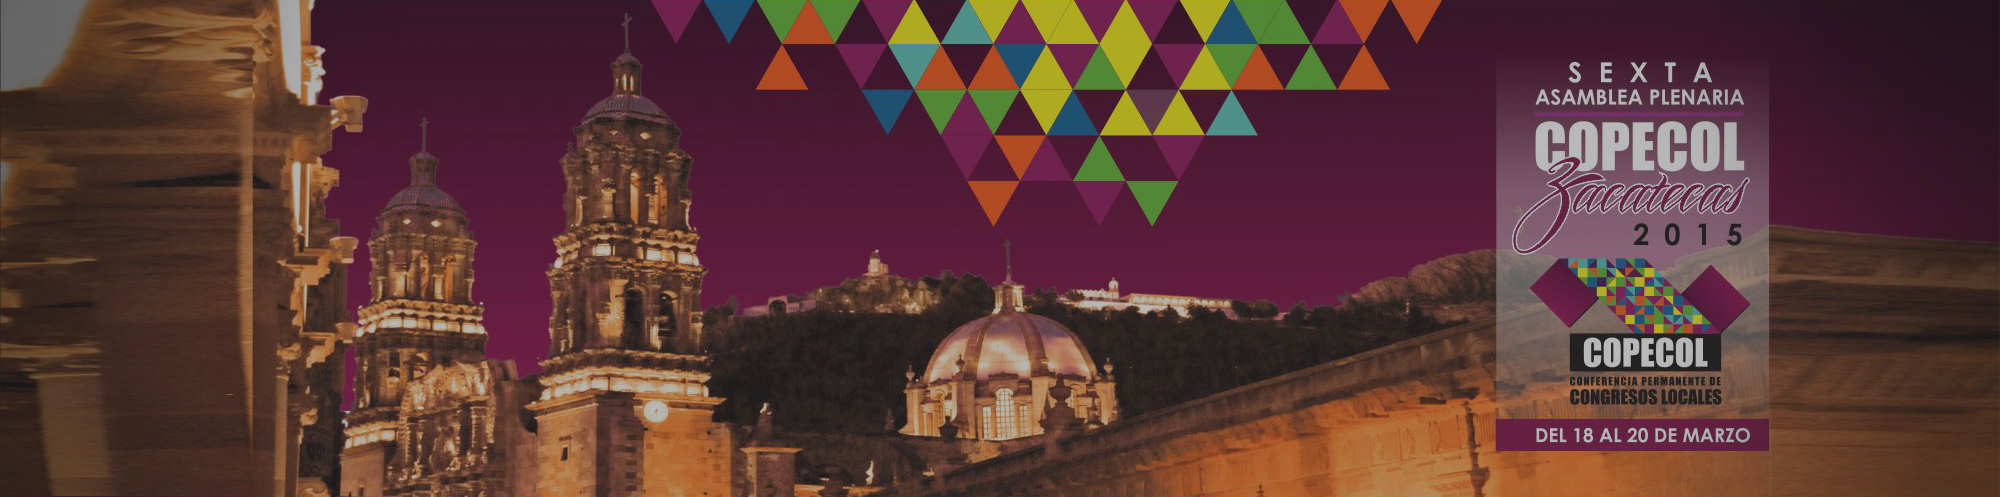 Zacatecas, Sede de la Sexta Asamblea Plenaria